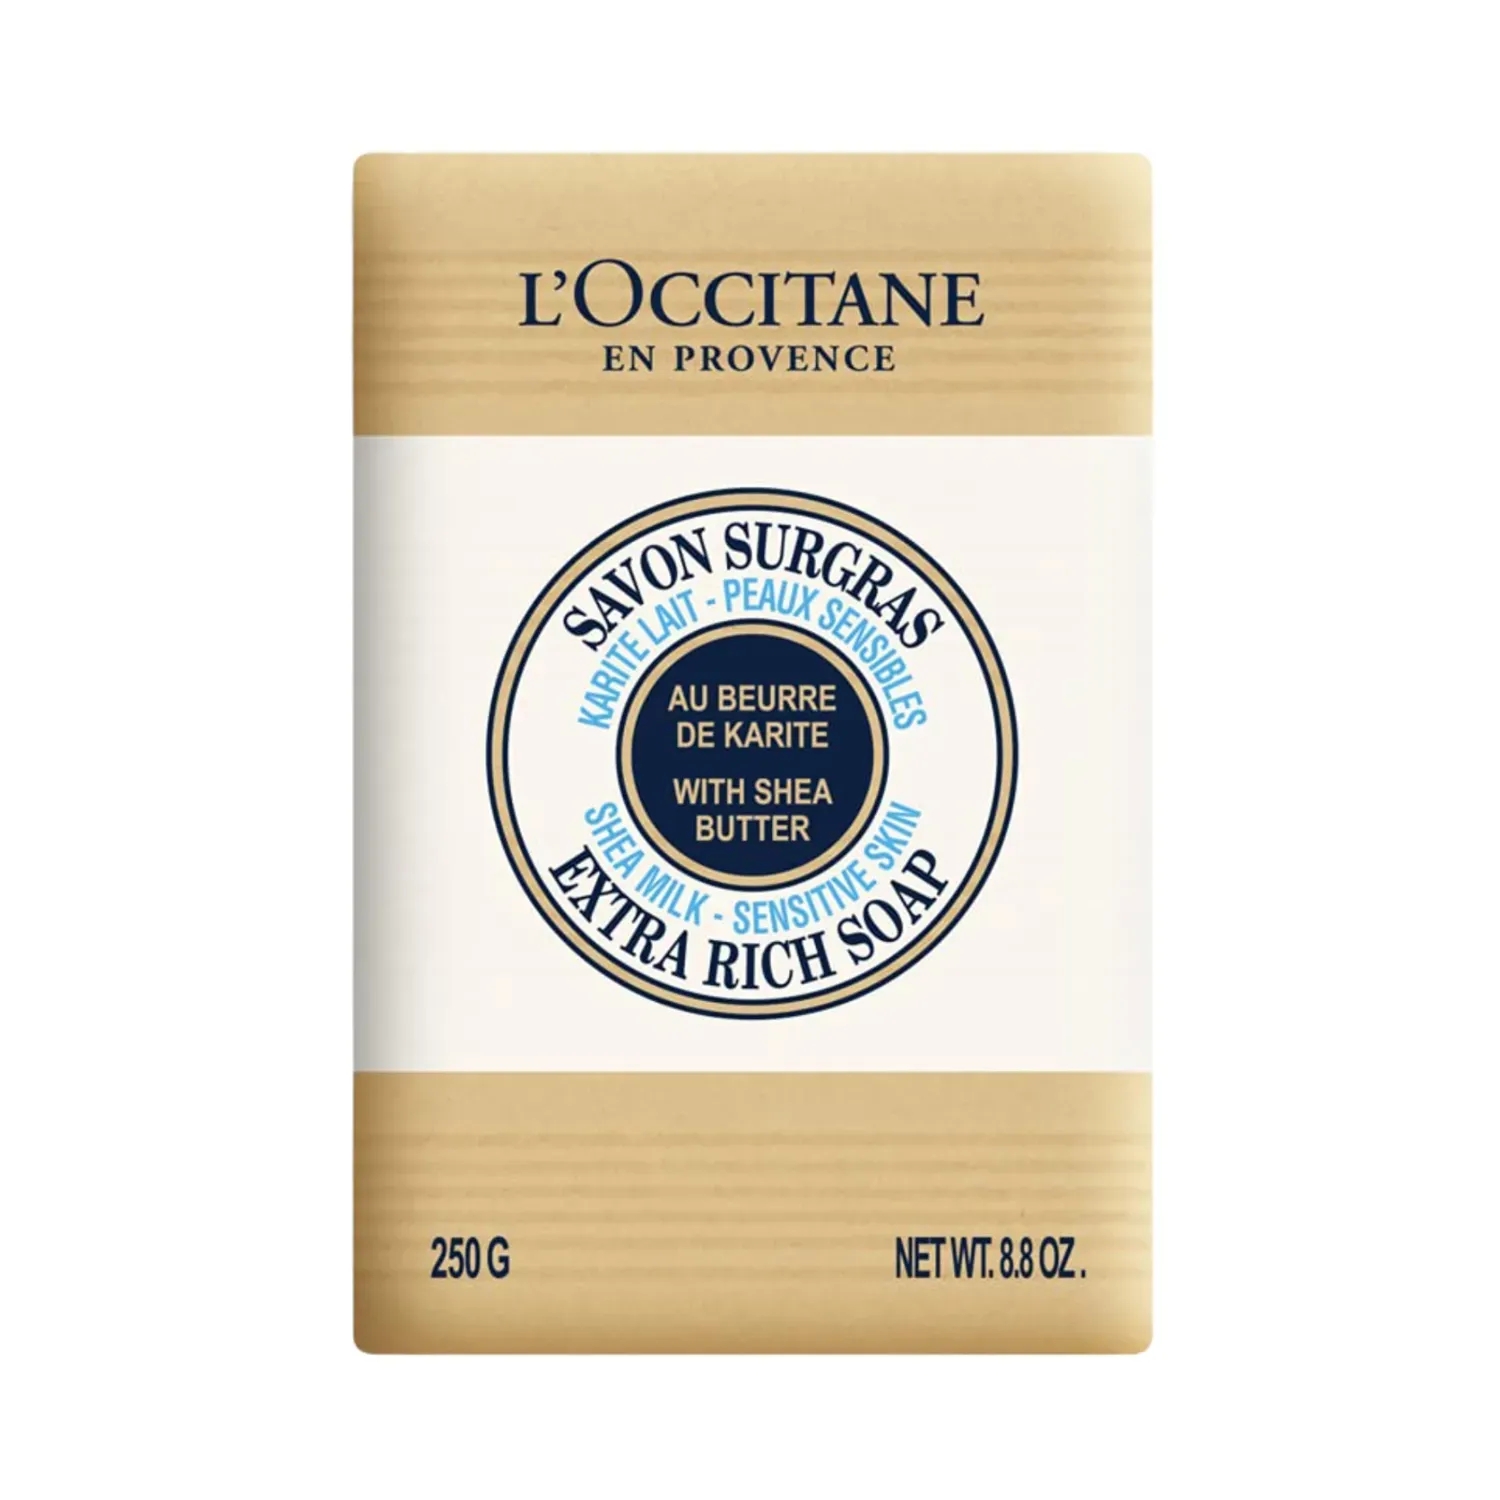 L'occitane | L'occitane Shea Butter Extra Gentle Milk Soap - Milk Sensitive Skin (250g)